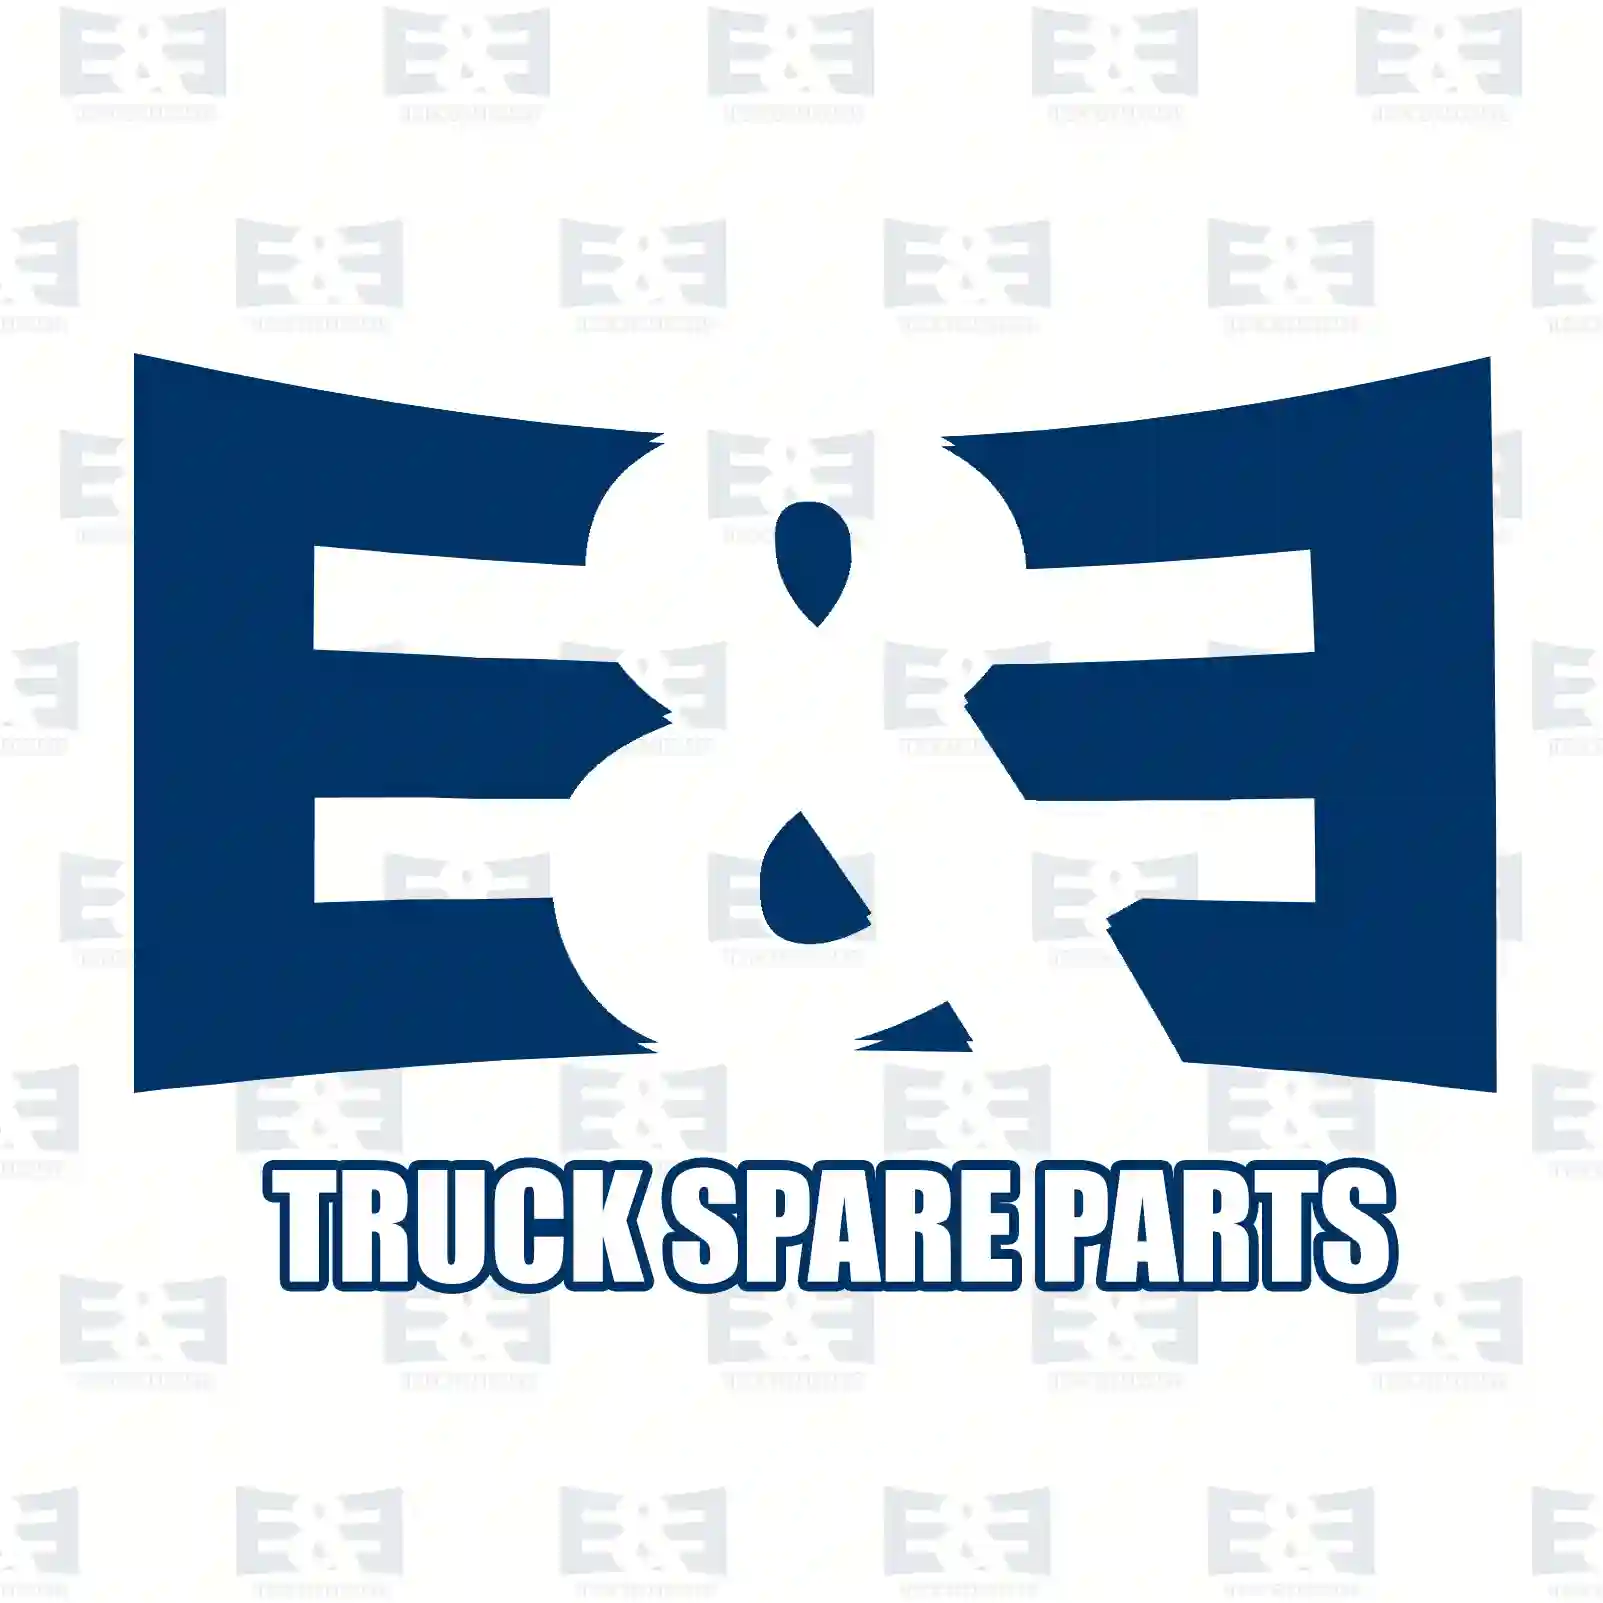 Guide sleeve, 2E2278759, 1668217 ||  2E2278759 E&E Truck Spare Parts | Truck Spare Parts, Auotomotive Spare Parts Guide sleeve, 2E2278759, 1668217 ||  2E2278759 E&E Truck Spare Parts | Truck Spare Parts, Auotomotive Spare Parts